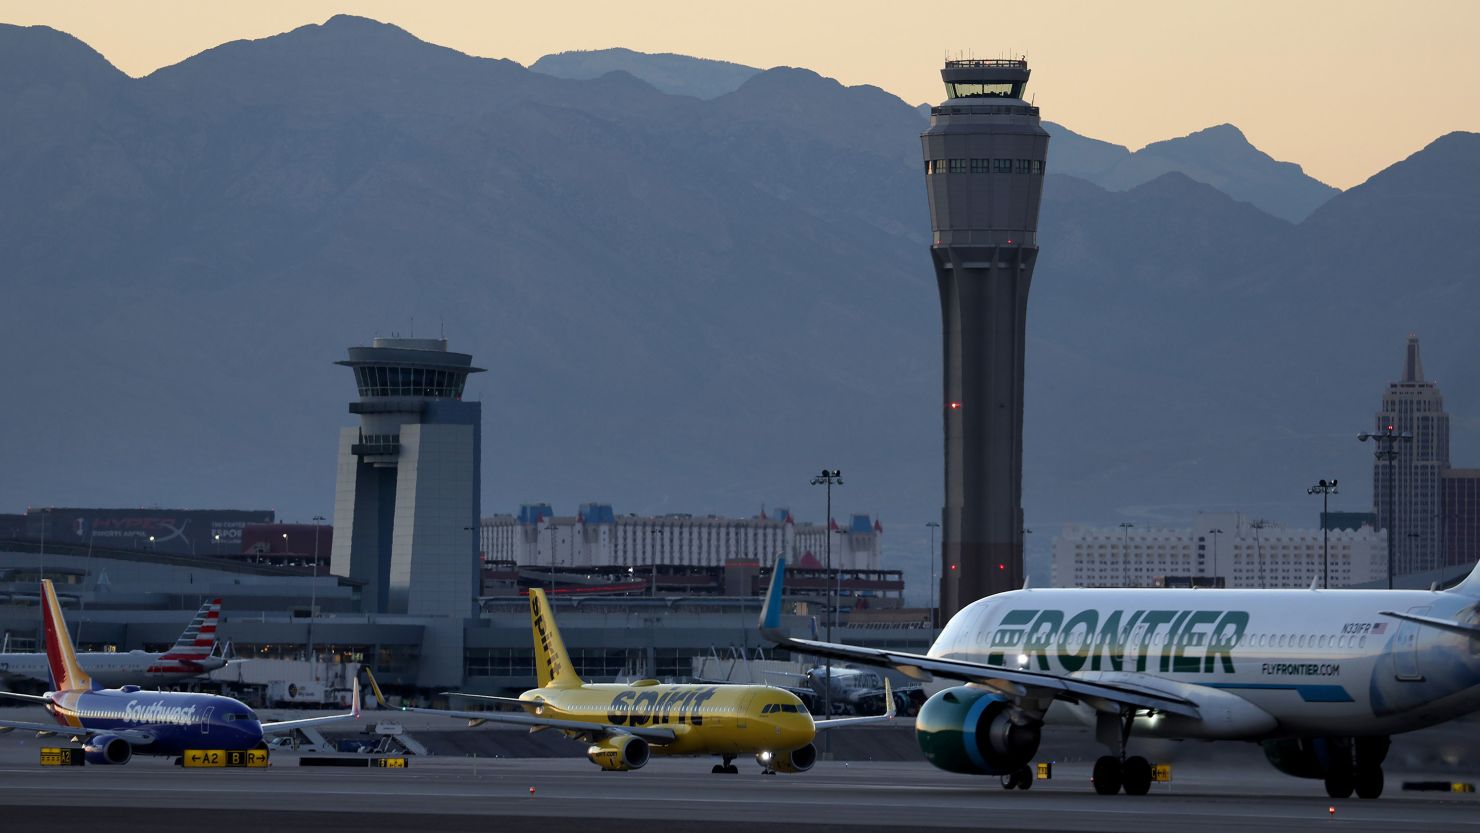 Harry Reid International Airport in Las Vegas, Nevada.